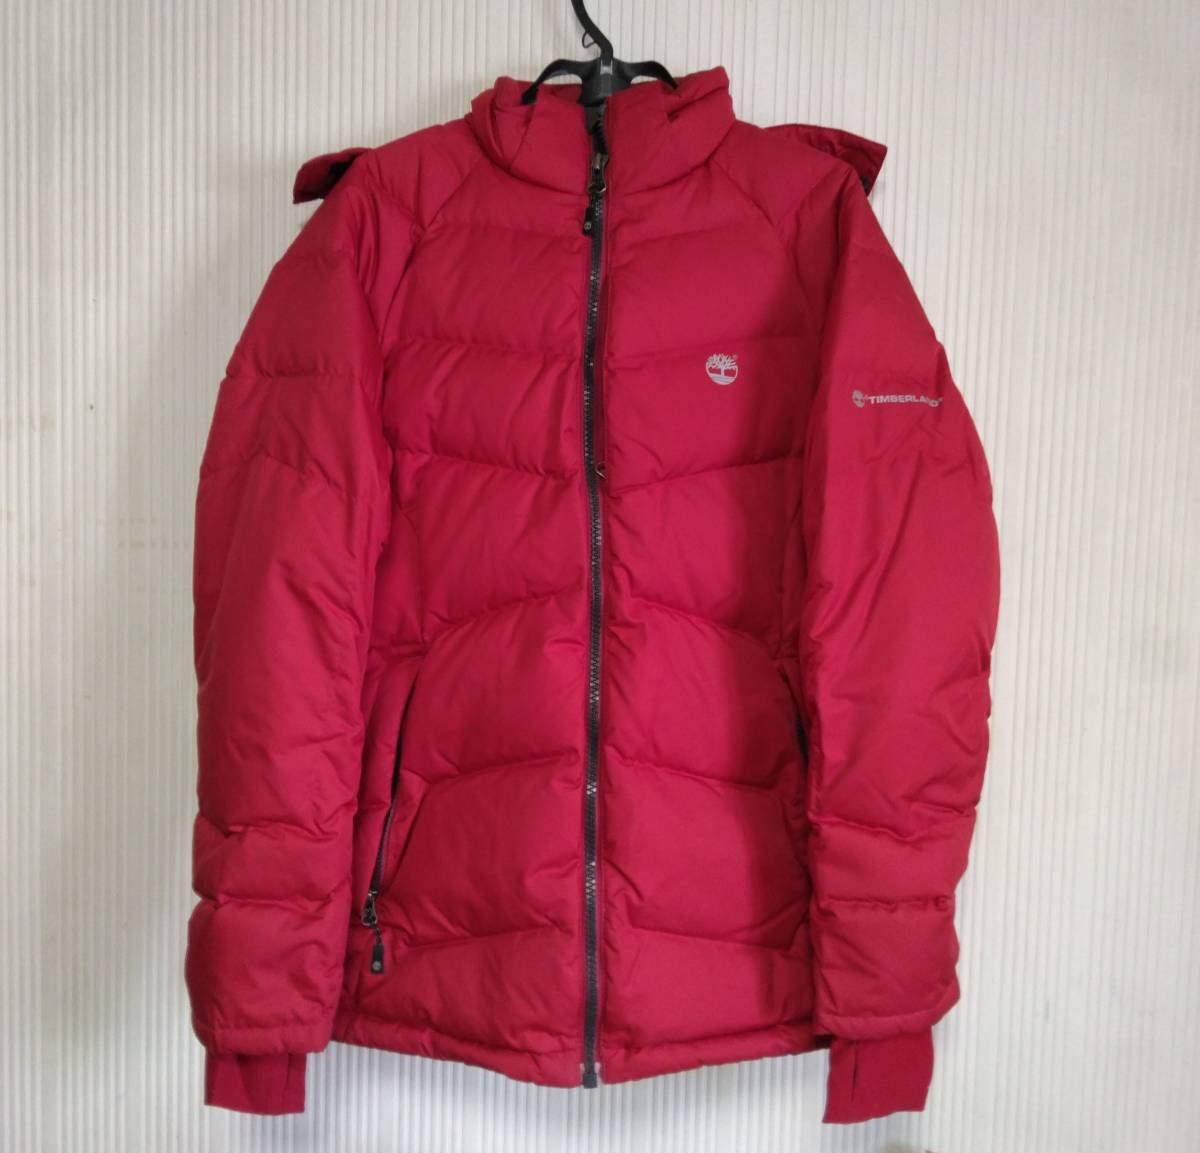 Timberland ティンバーランド ダウンジャケット ジャンパー 防寒 赤 メンズXSサイズ USED品